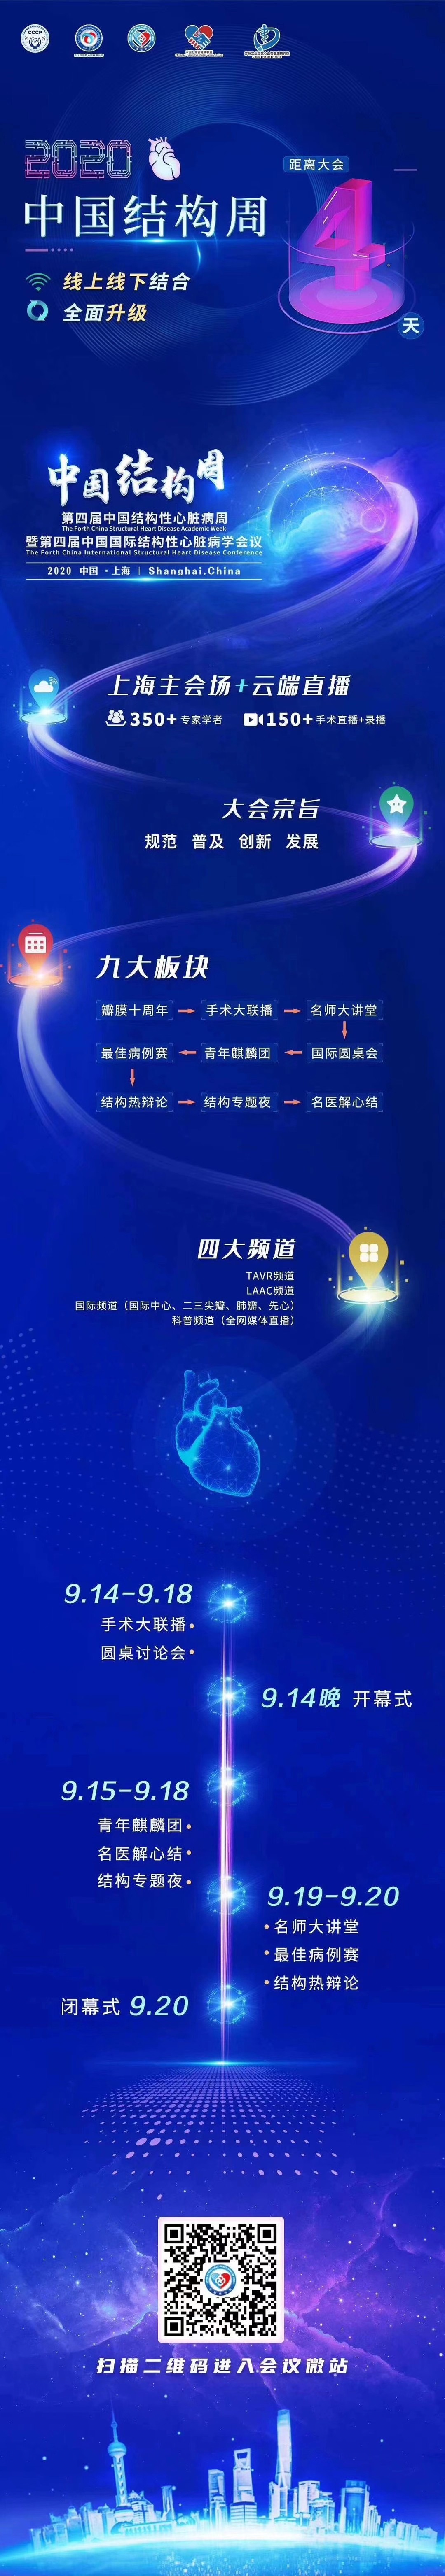 第四届中国结构性心脏病周活动亮点早知道